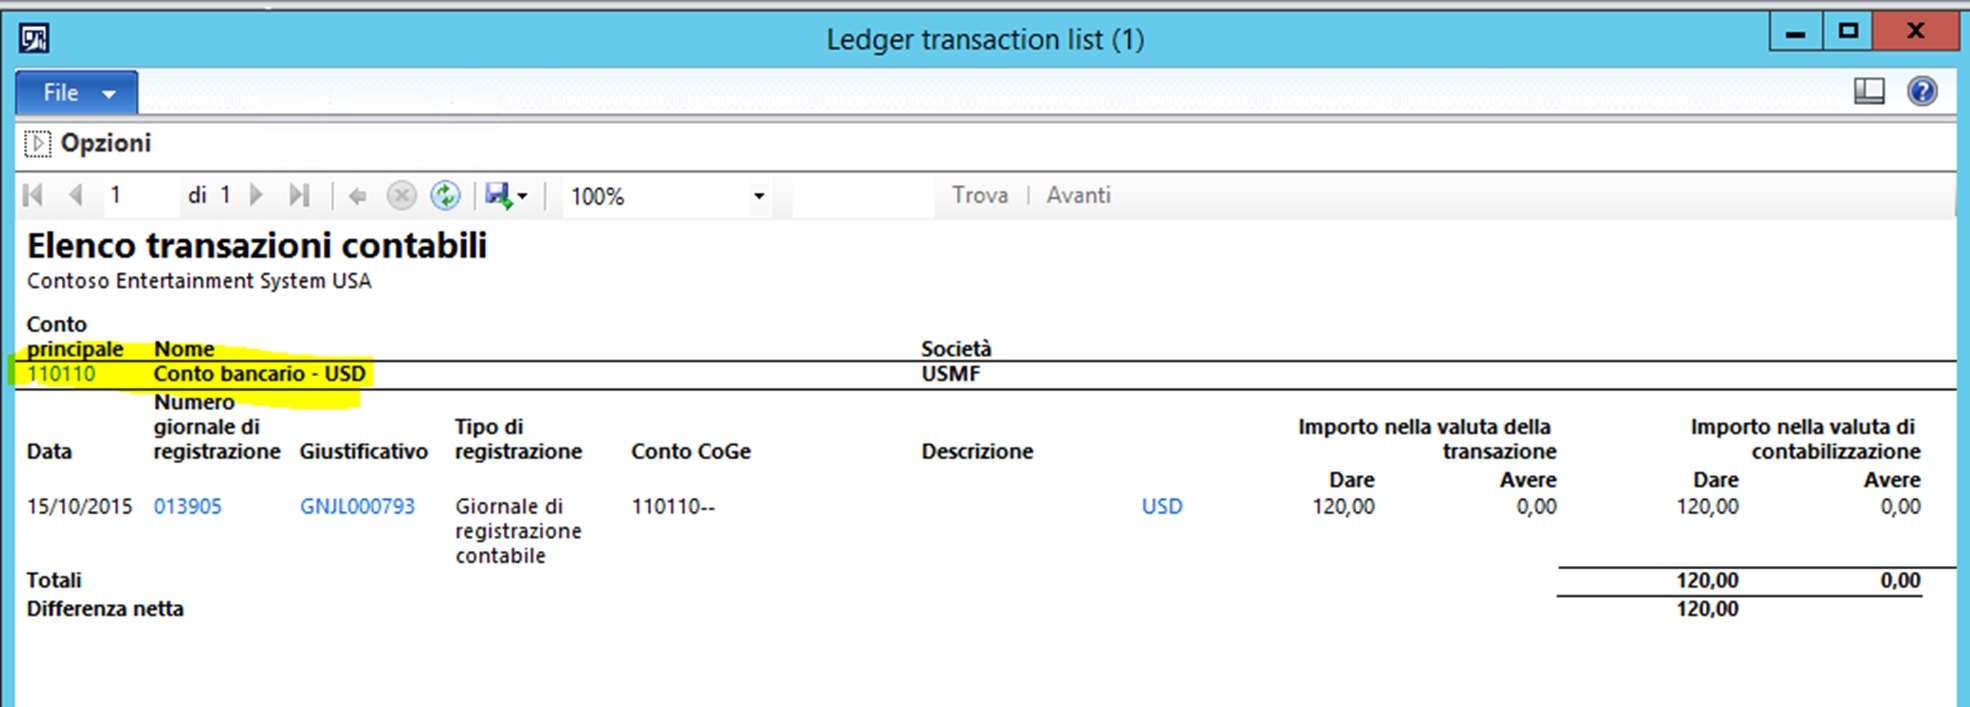 Ledger Transactions